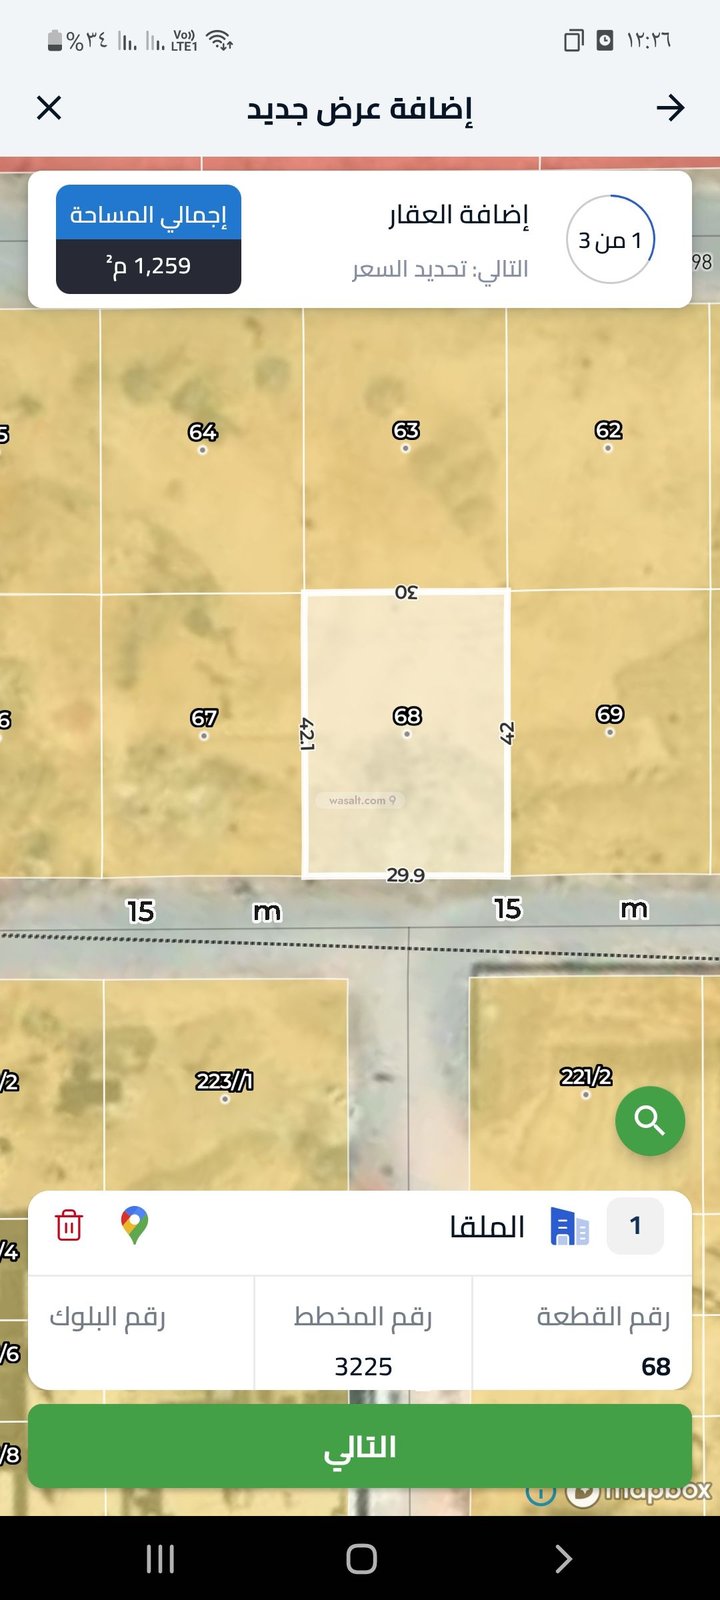 أرض 1260 متر مربع جنوبية على شارع 15م الملقا، شمال الرياض، الرياض